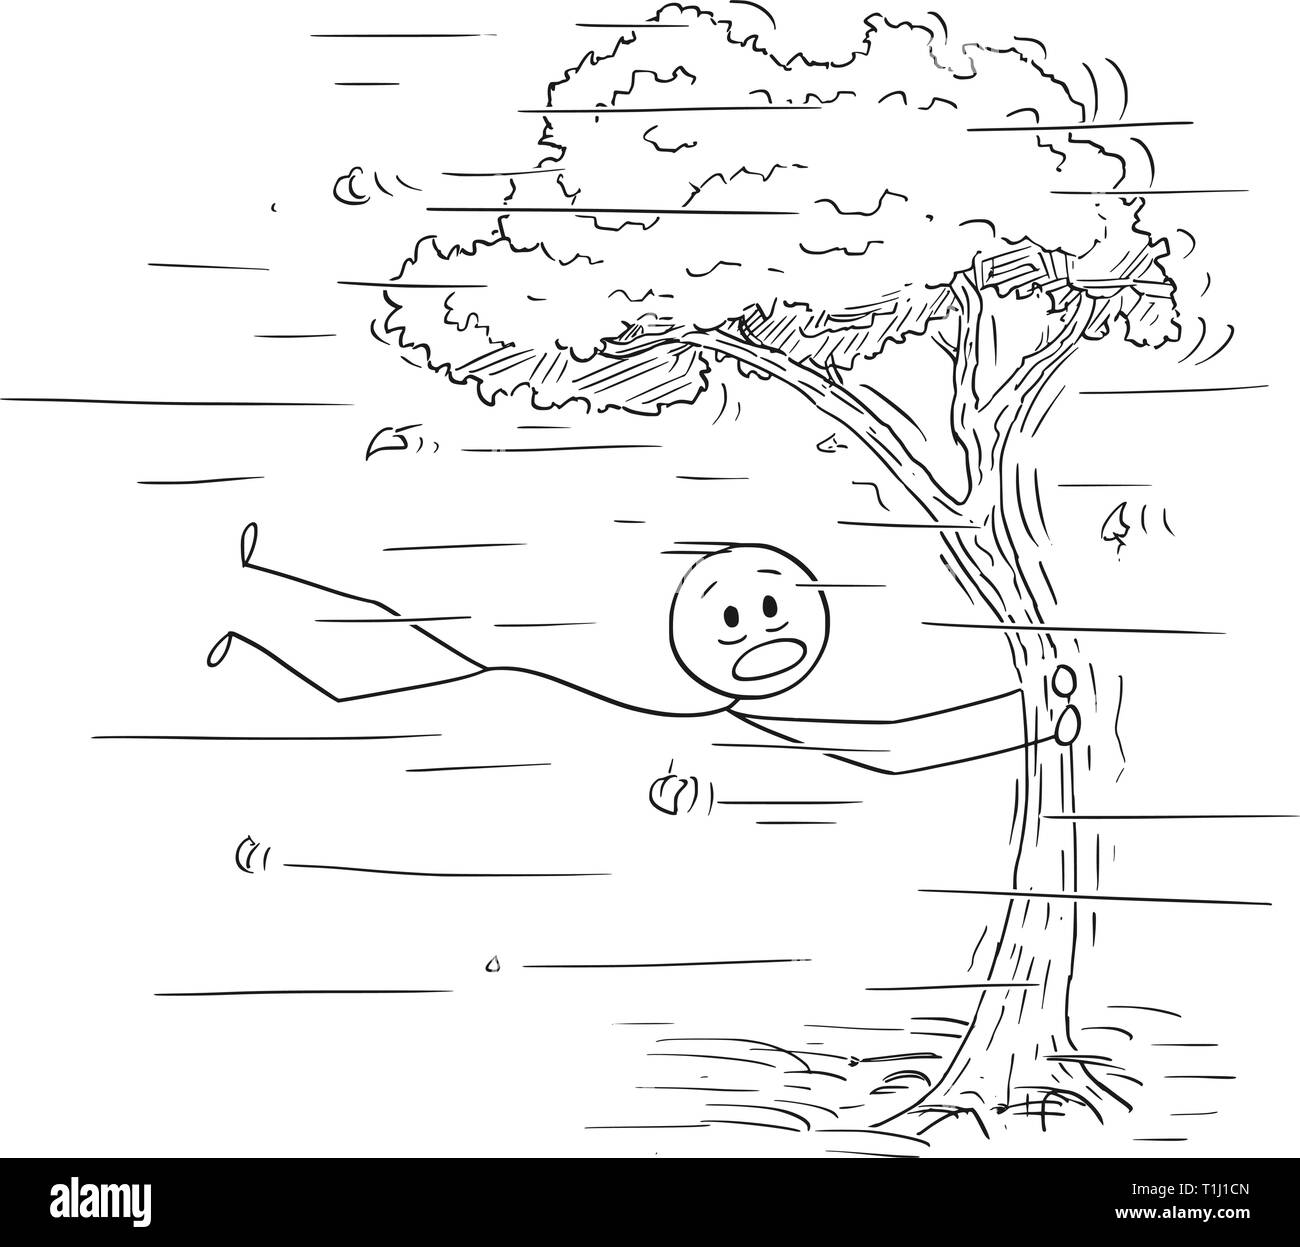 Cartoon Strichmannchen Zeichnen Konzeptionelle Darstellung Der Mann Mit Baumstamm Und Fliegen Bei Wind Oder Sturm Stock Vektorgrafik Alamy